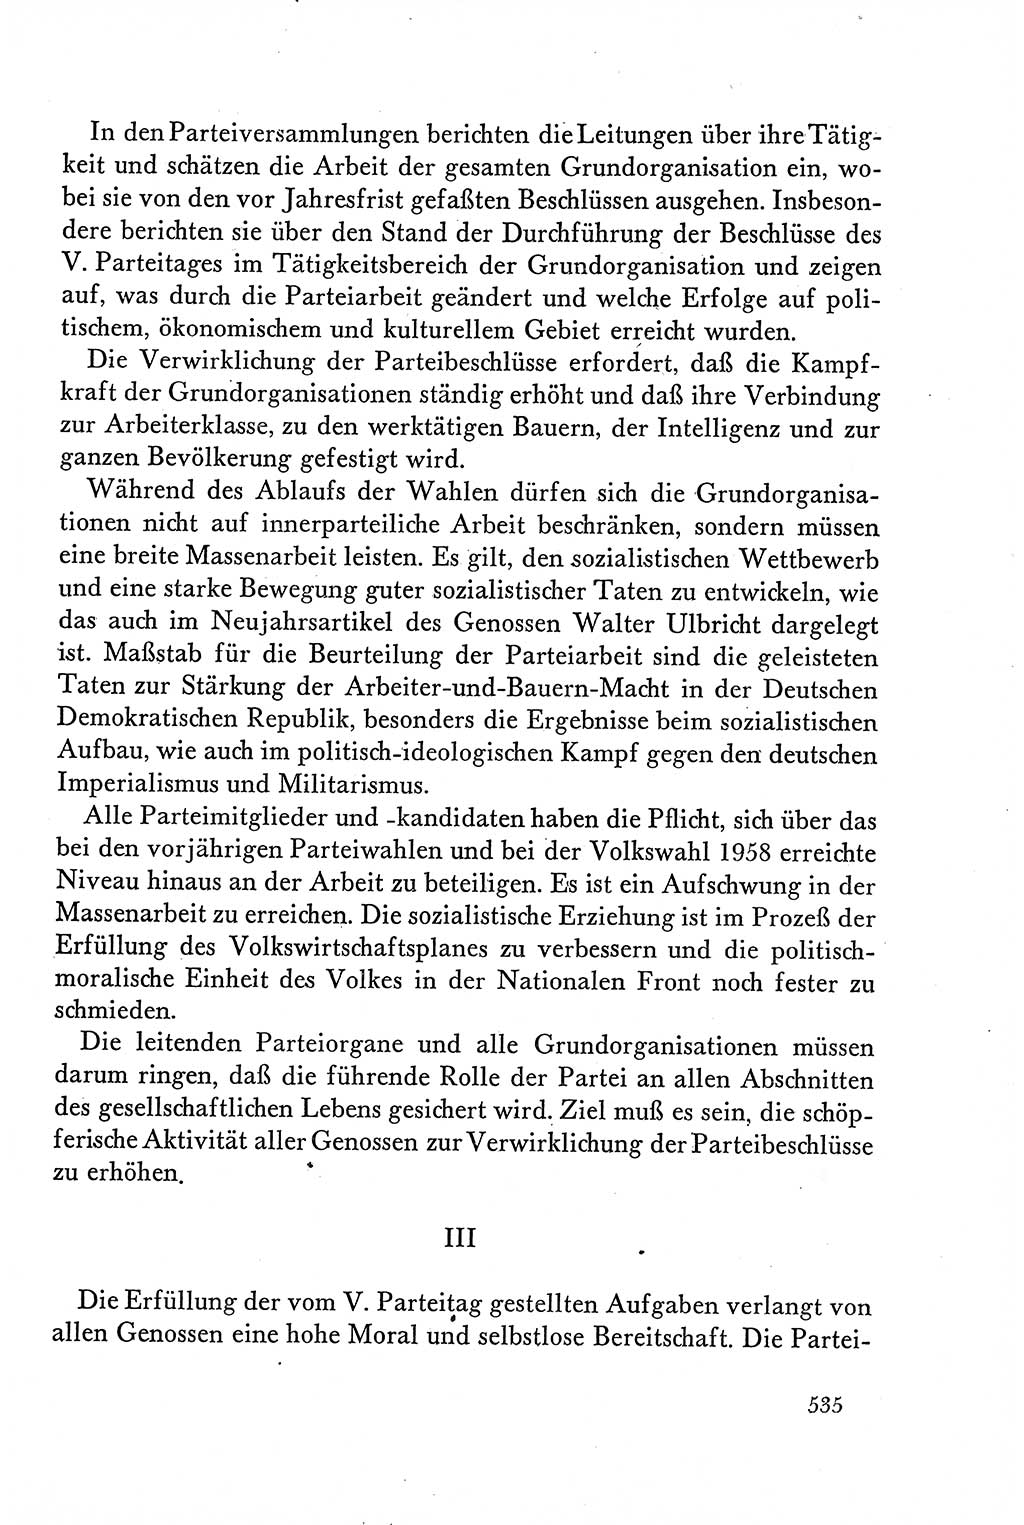 Dokumente der Sozialistischen Einheitspartei Deutschlands (SED) [Deutsche Demokratische Republik (DDR)] 1958-1959, Seite 535 (Dok. SED DDR 1958-1959, S. 535)